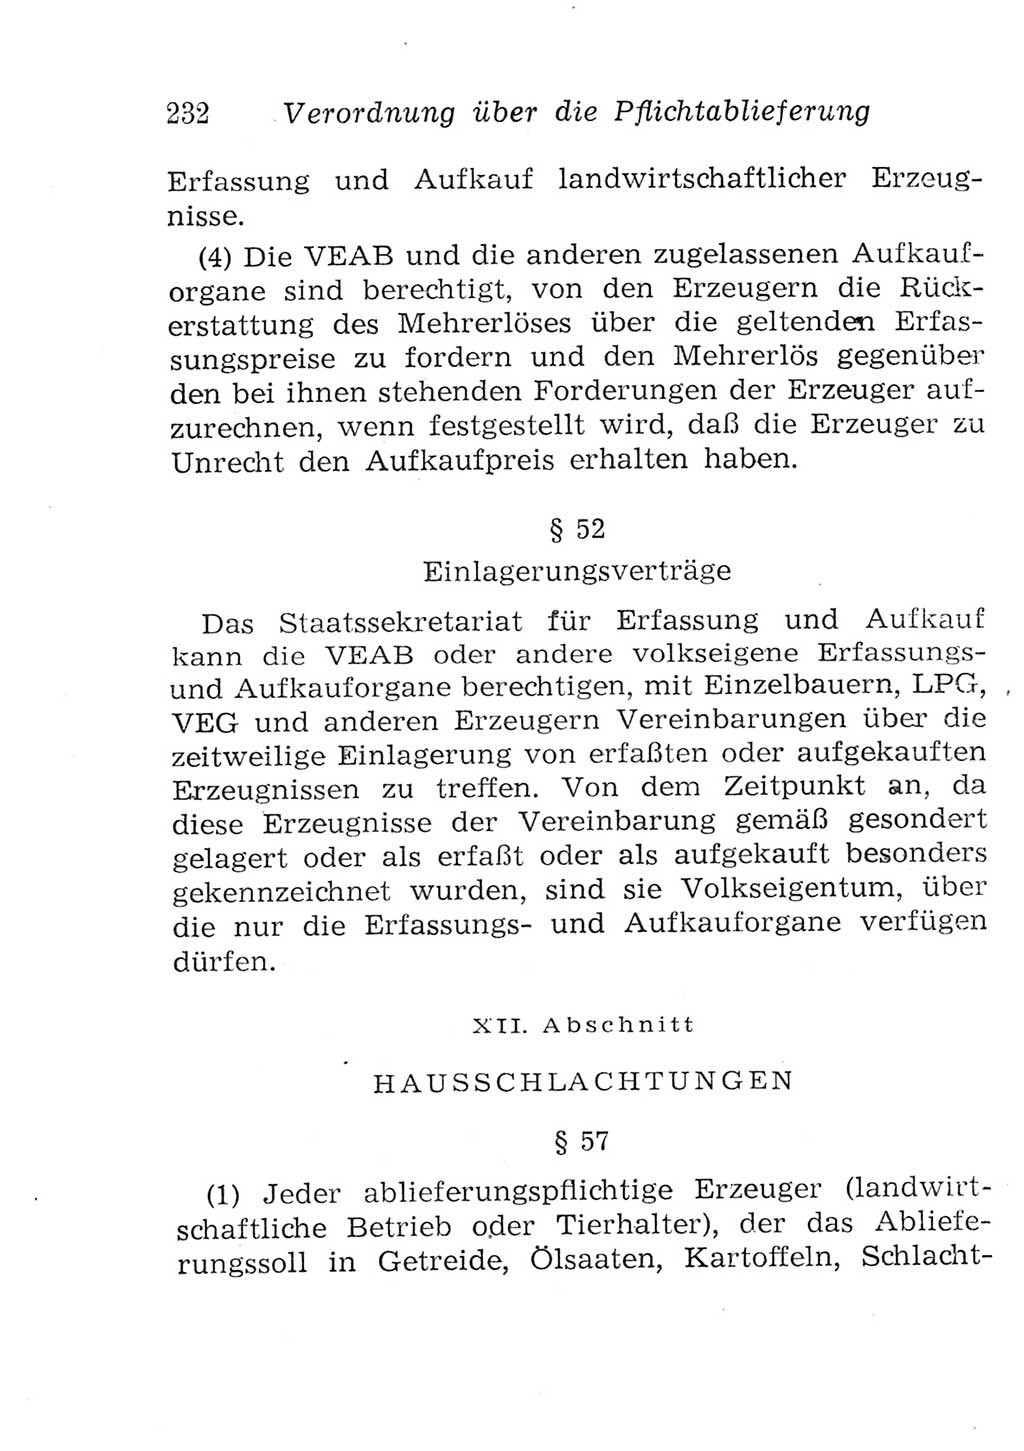 Strafgesetzbuch (StGB) und andere Strafgesetze [Deutsche Demokratische Republik (DDR)] 1957, Seite 232 (StGB Strafges. DDR 1957, S. 232)